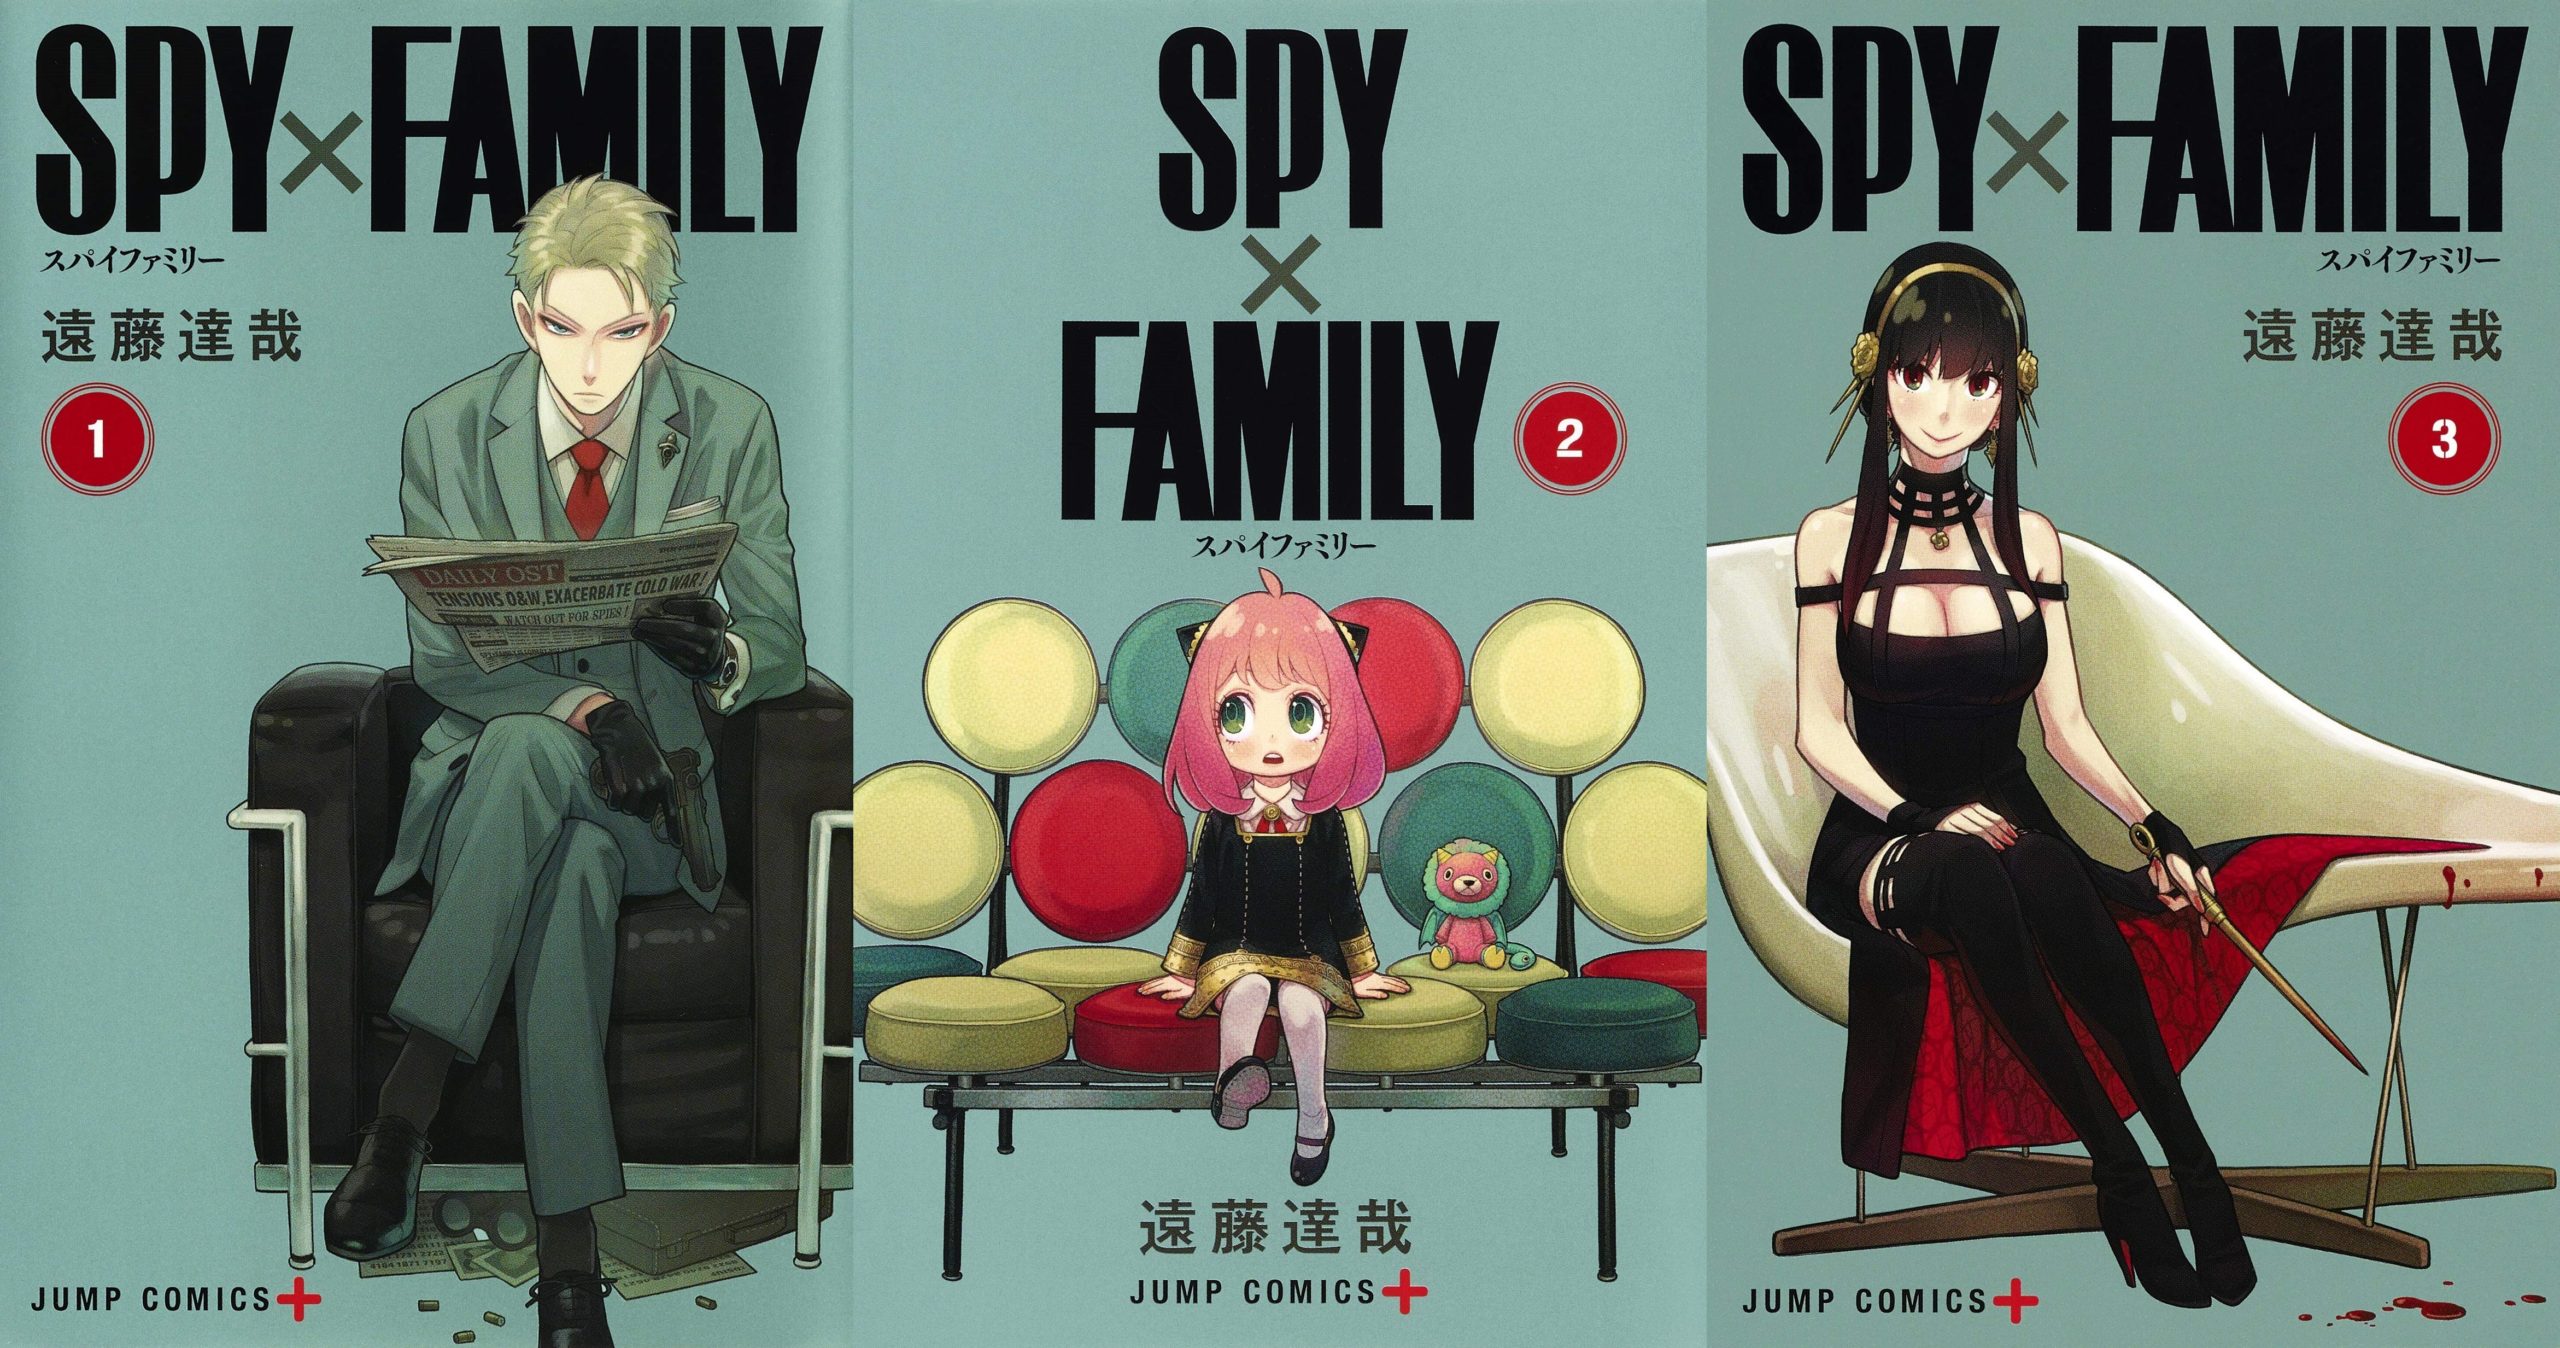 Site revela que SPY x FAMILY é o anime que os fãs japoneses estão mais  ansiosos para assistir nessa temporada - Crunchyroll Notícias